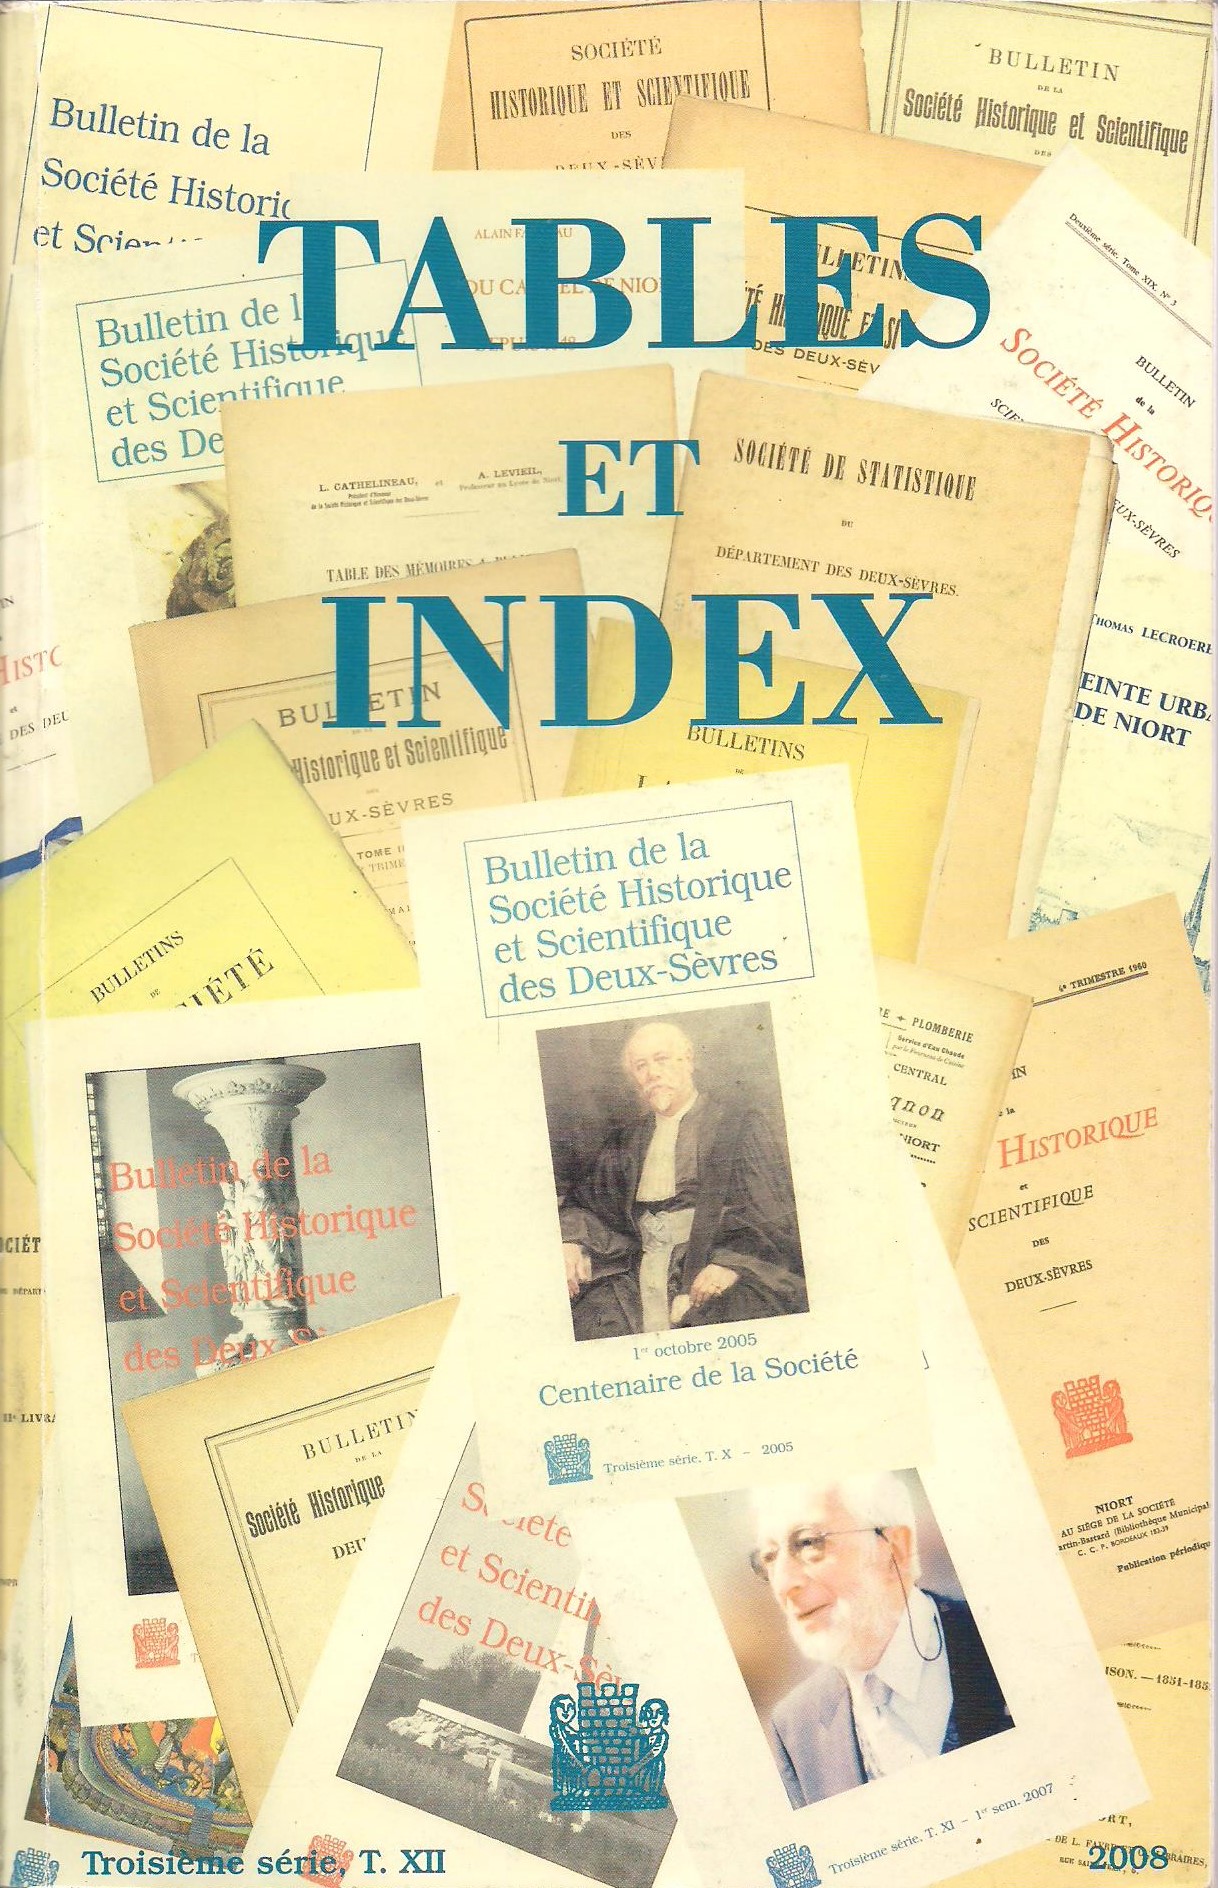 SHSDS : Bulletin Troisième série Tome XII 2008 : Tables et Index